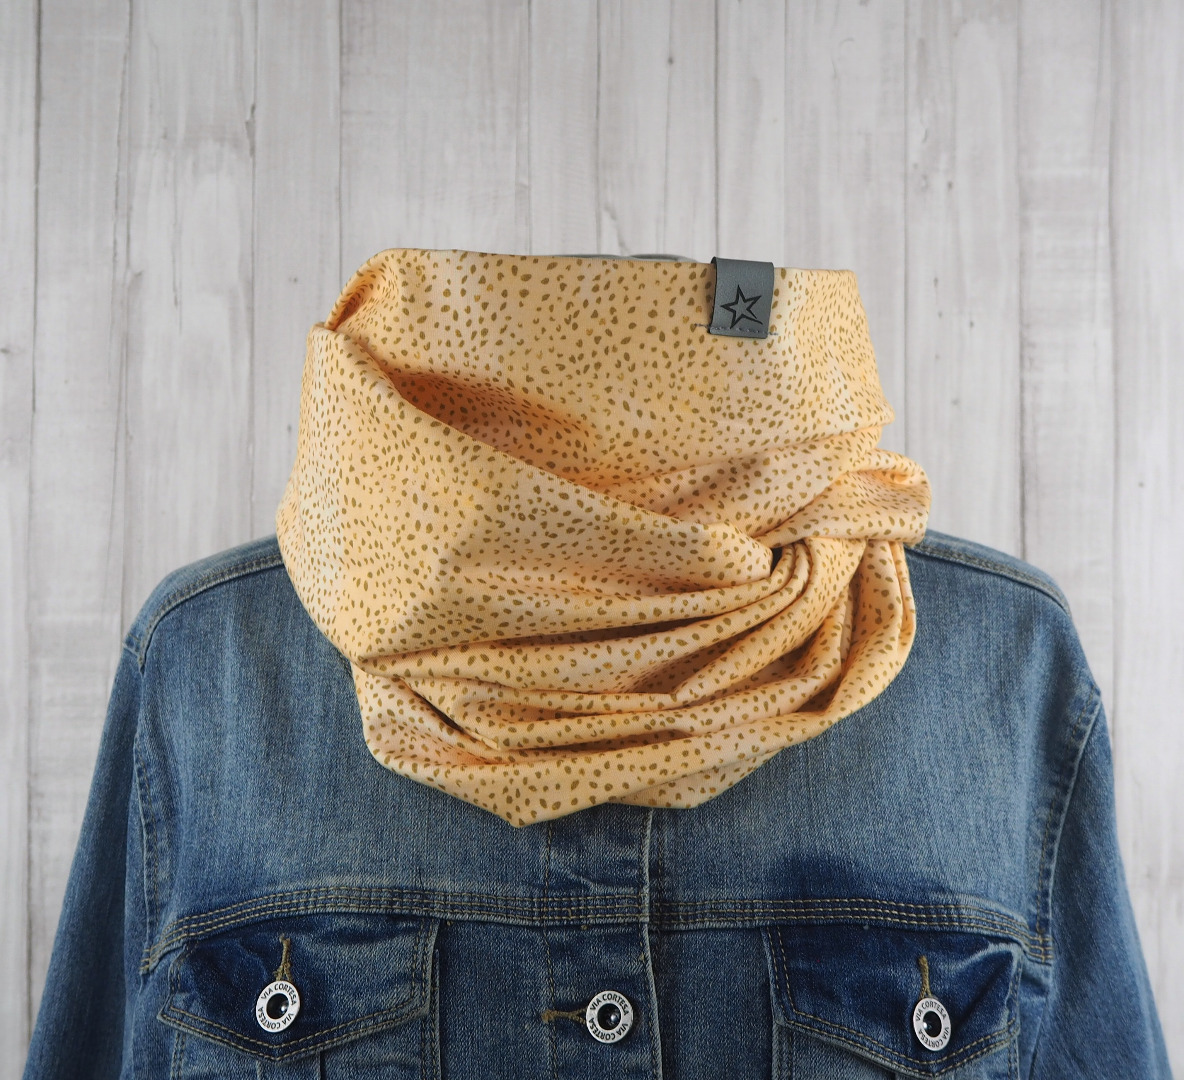 Loop Schlauschal gelb mit Farbverlauf und zurückhaltendem Animalprint - Ton in Ton - Schal für Damen aus Jersey